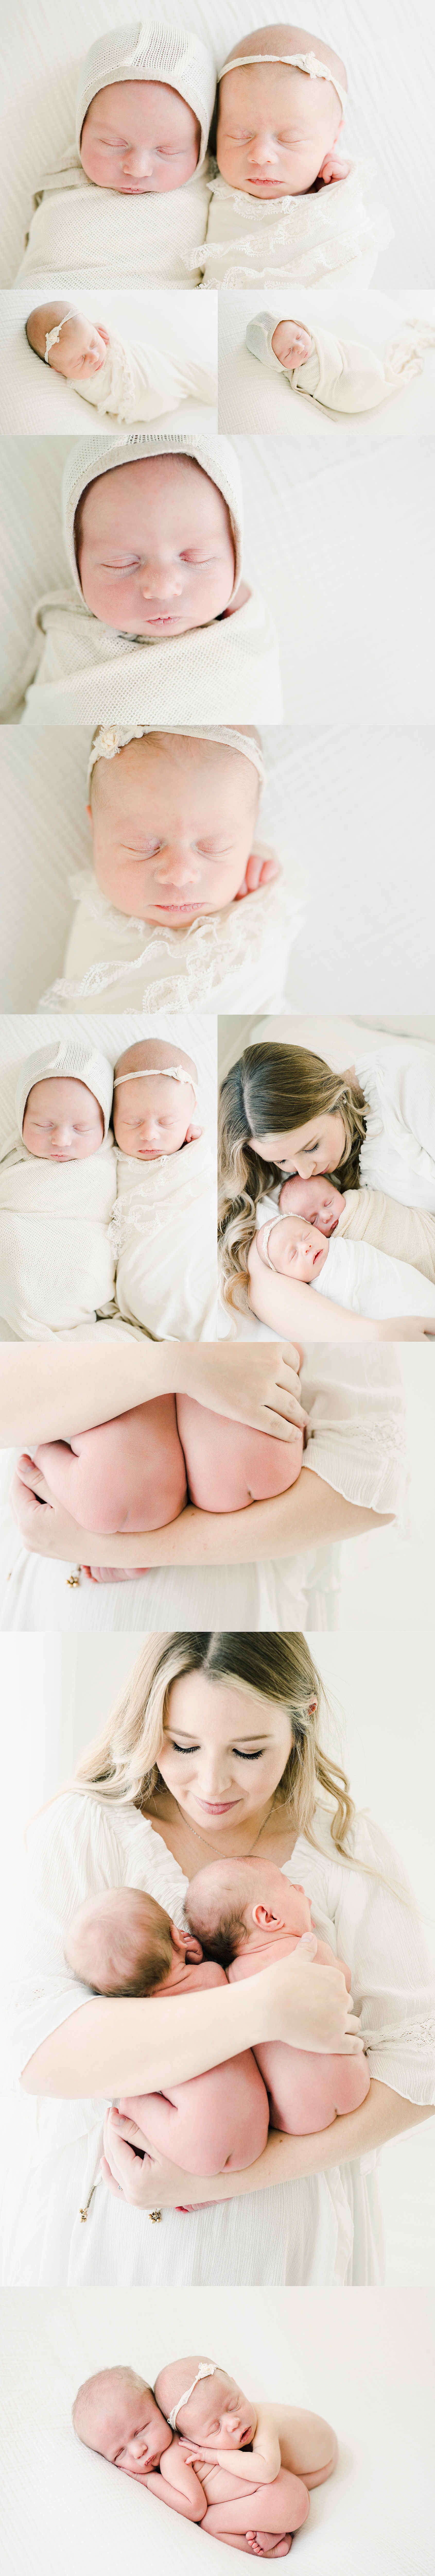 Beautiful twin newborn portraits